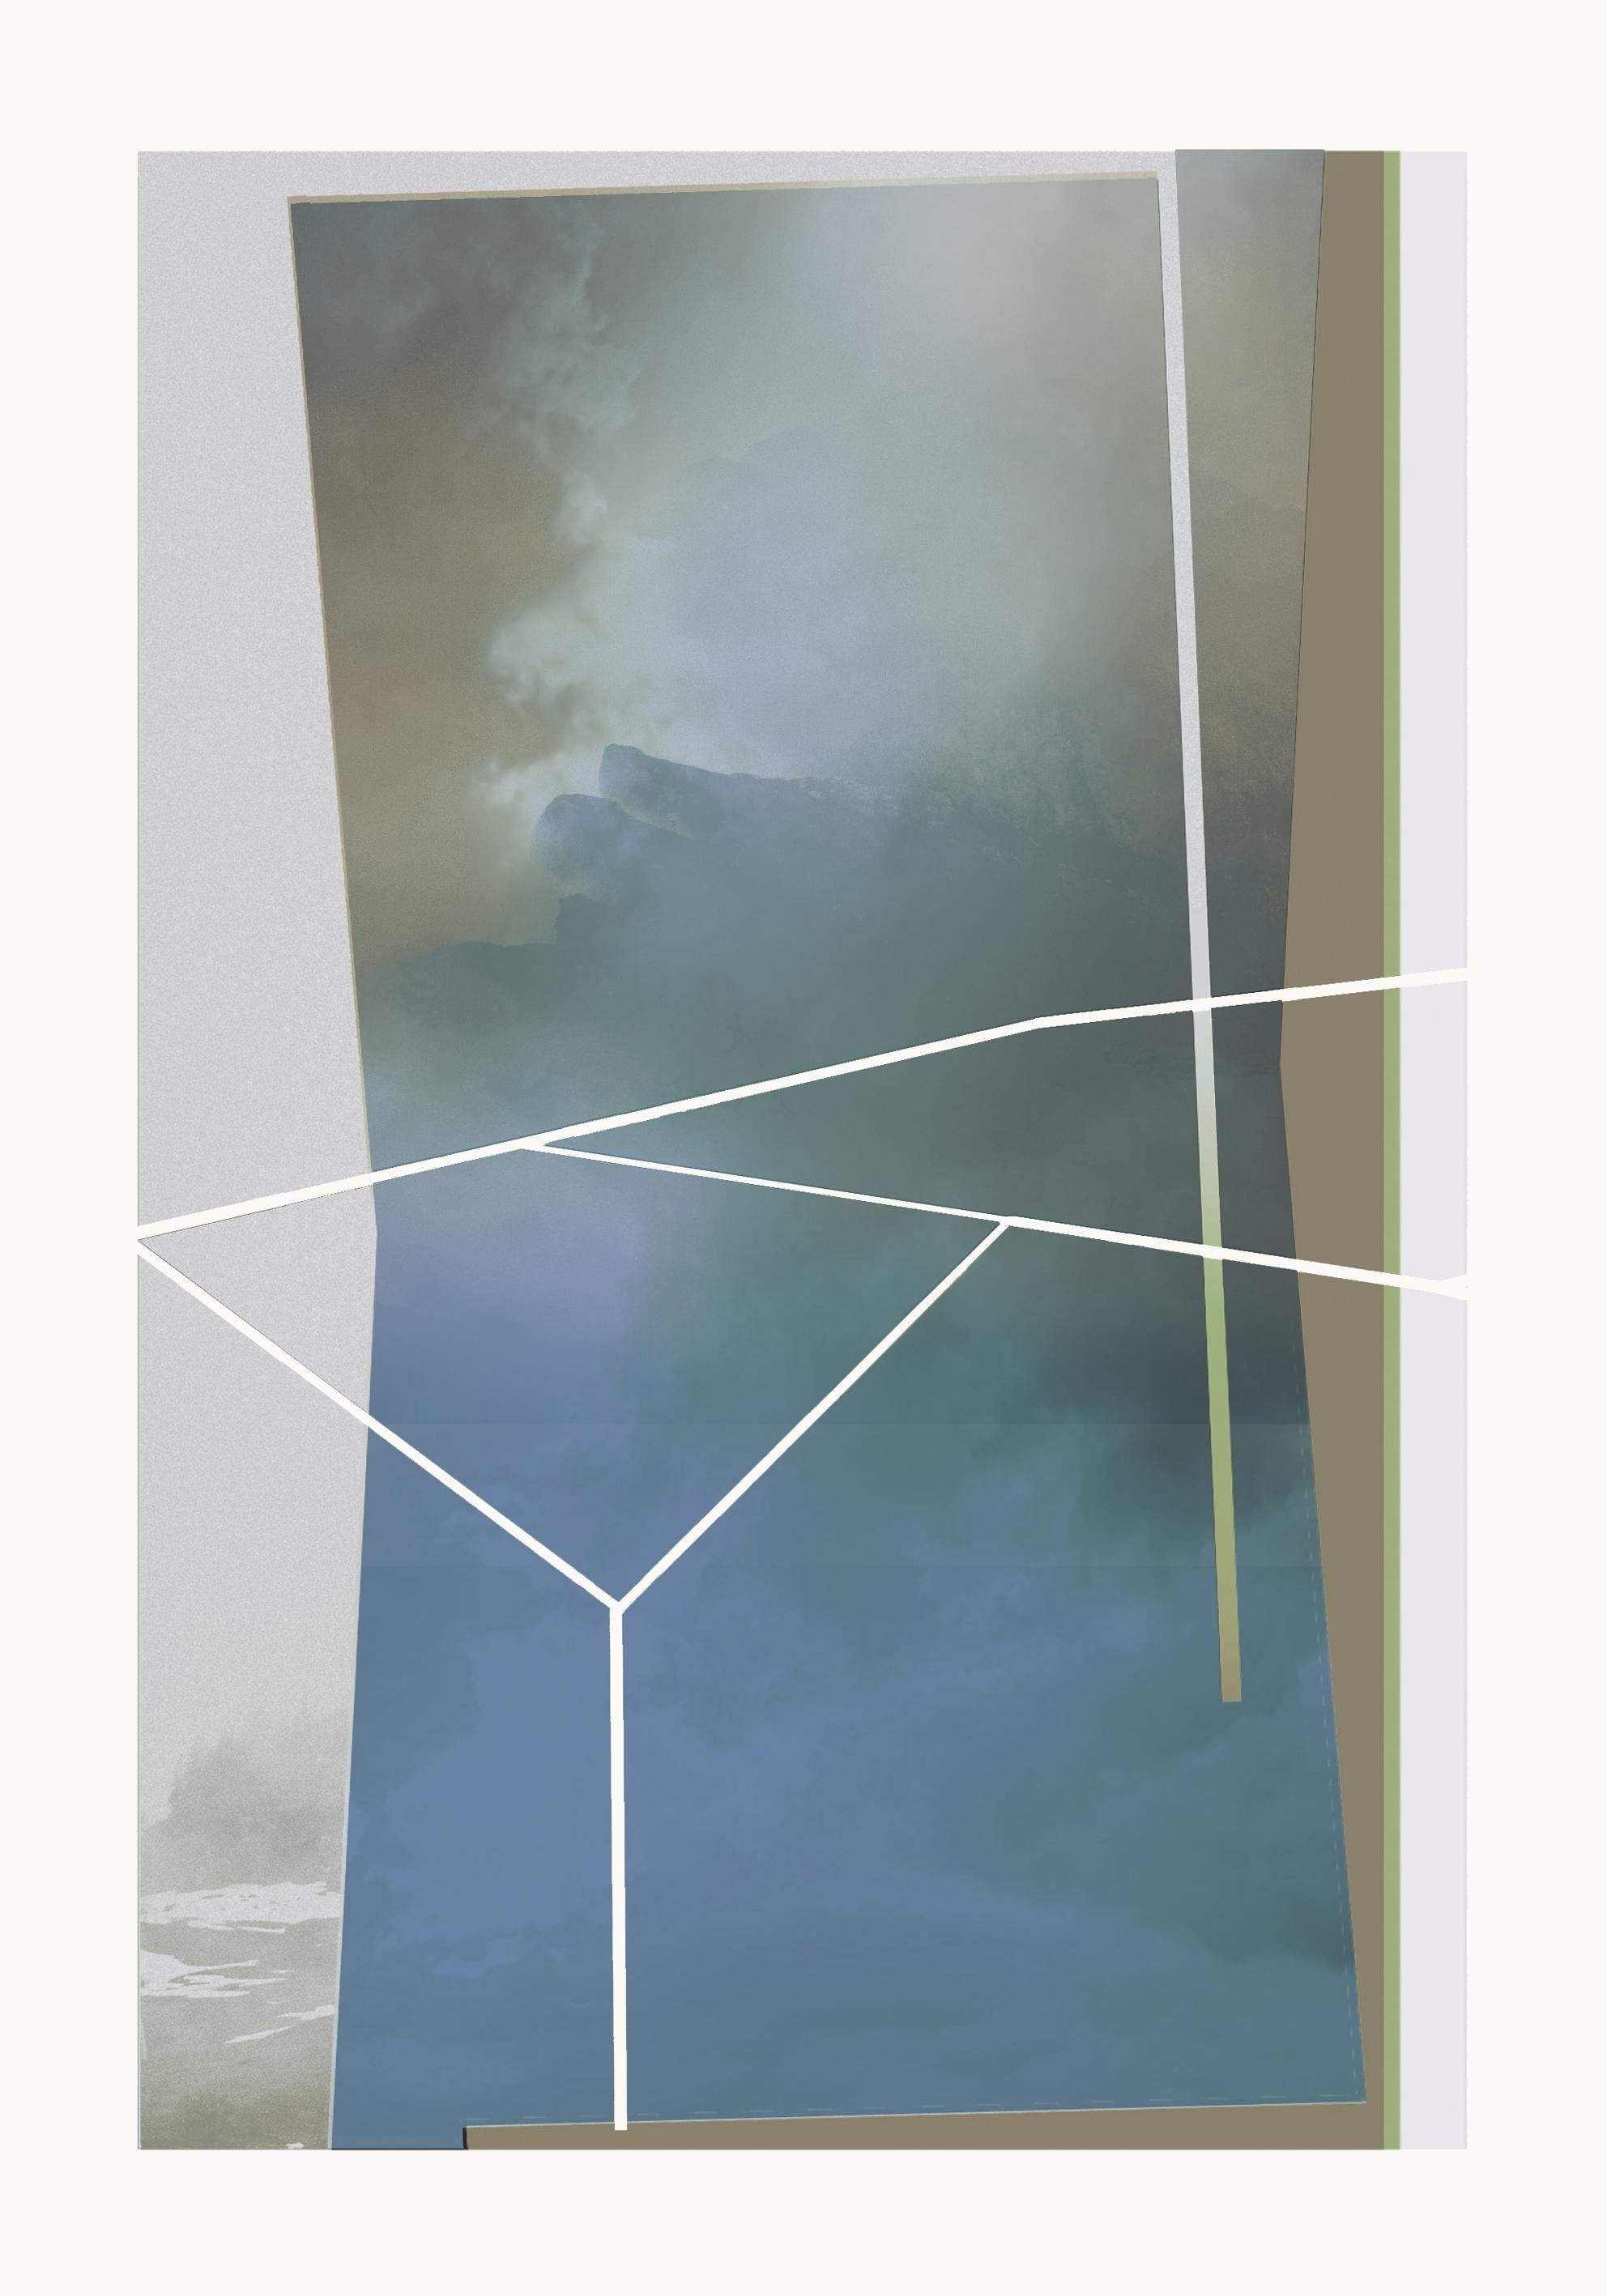 Abstract Print Francisco Nicolás - Contemporain fenêtre abstraite, gestuel, art urbain, pop art, moderne, géométrique